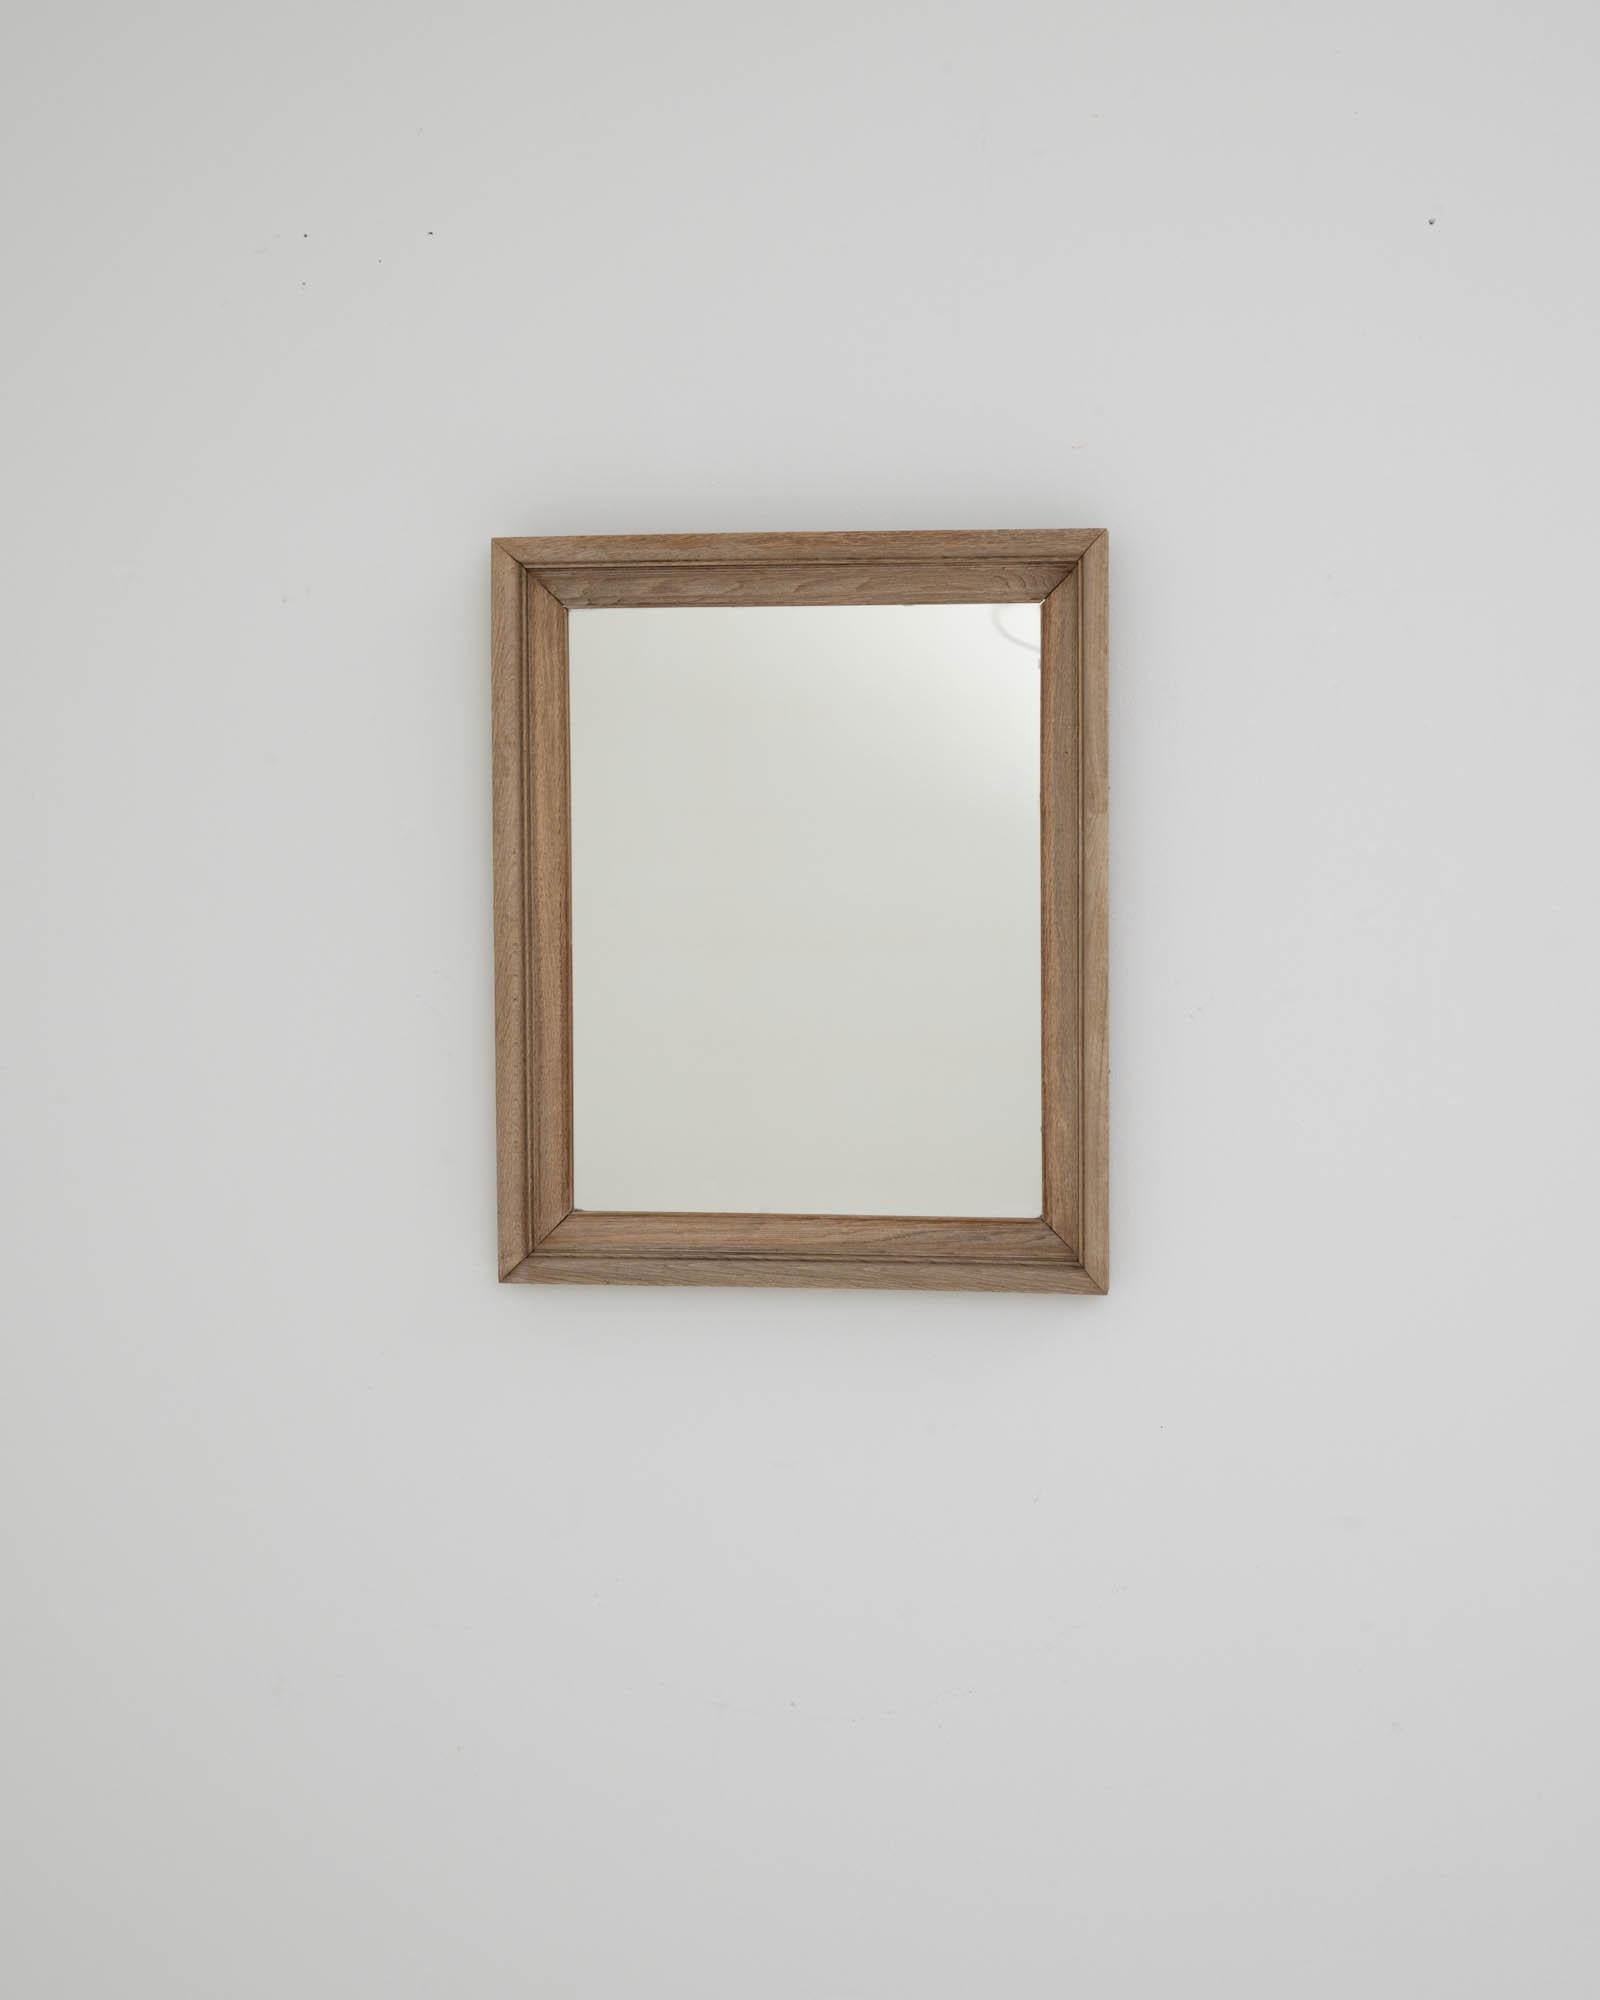 Miroir en bois fabriqué dans la France des années 1900. La forme rectangulaire simple et moulée de ce miroir dégage une impression de calme ensoleillé. Ce miroir unique en son genre associe un design traditionnel à une sensibilité minimale, ce qui